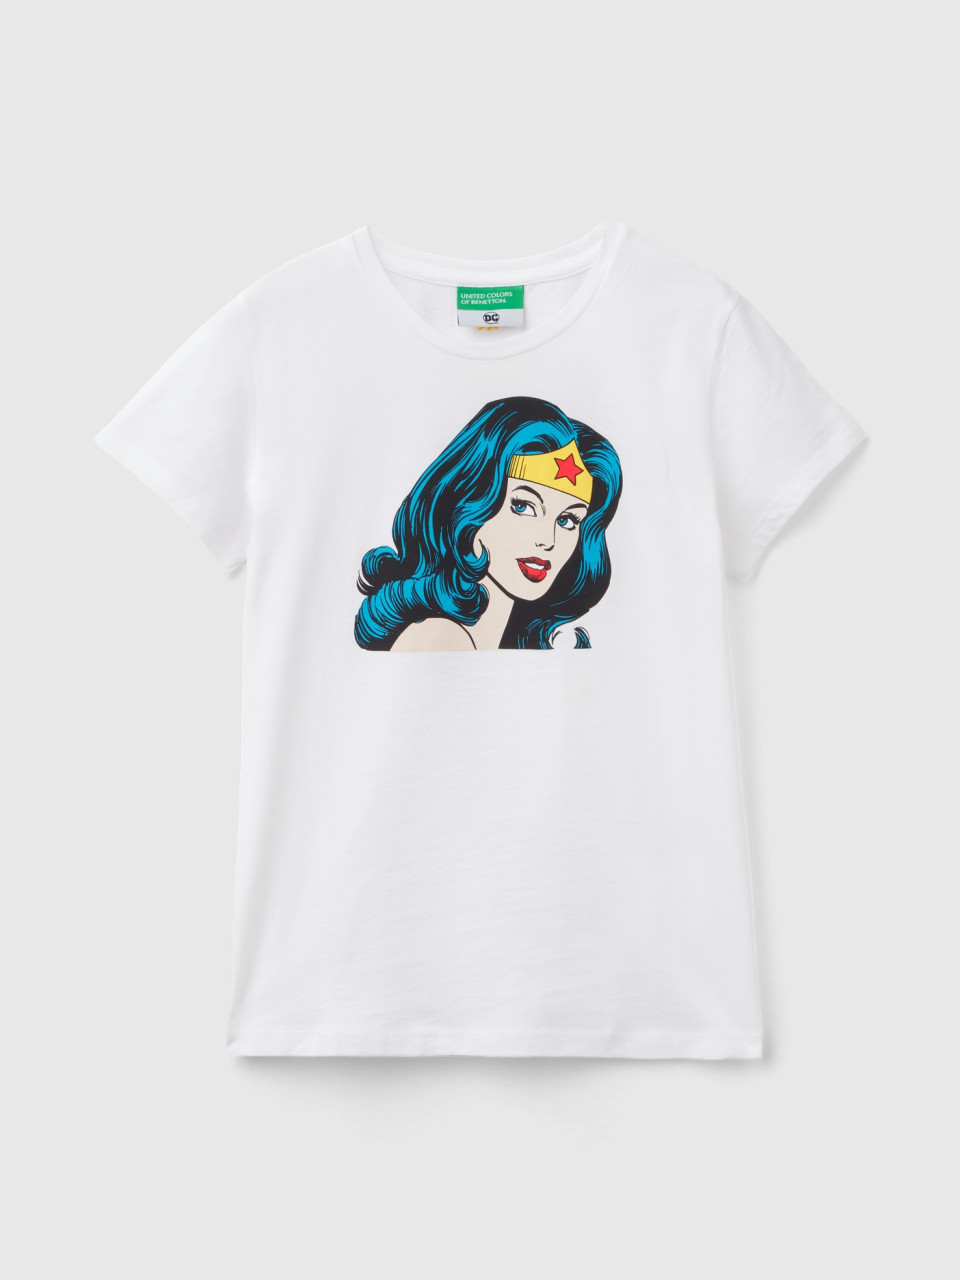 Benetton, Wonder Woman ©&™ Dc Comics T-shirt, White, Kids